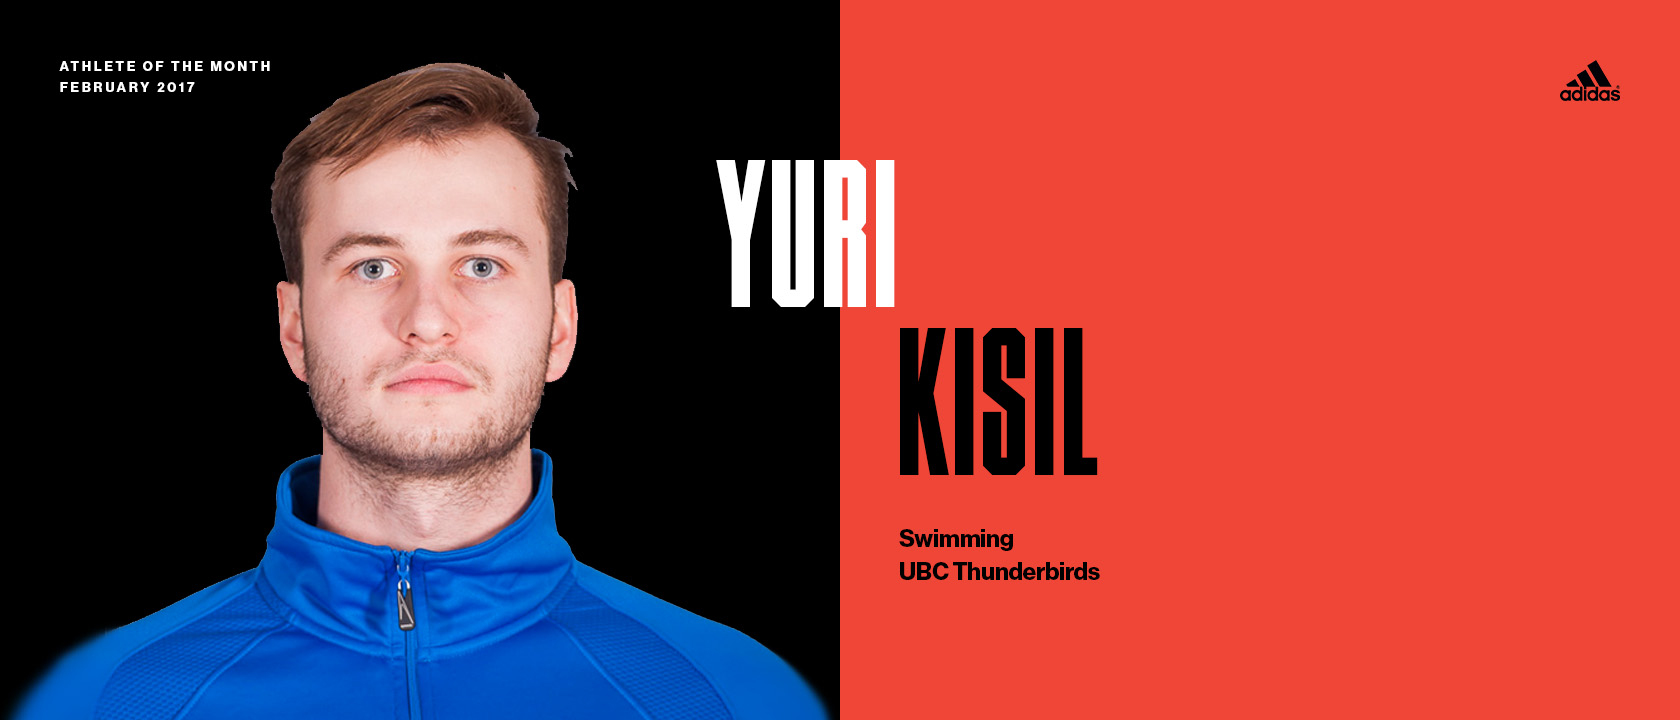 February: Yuri Kisil